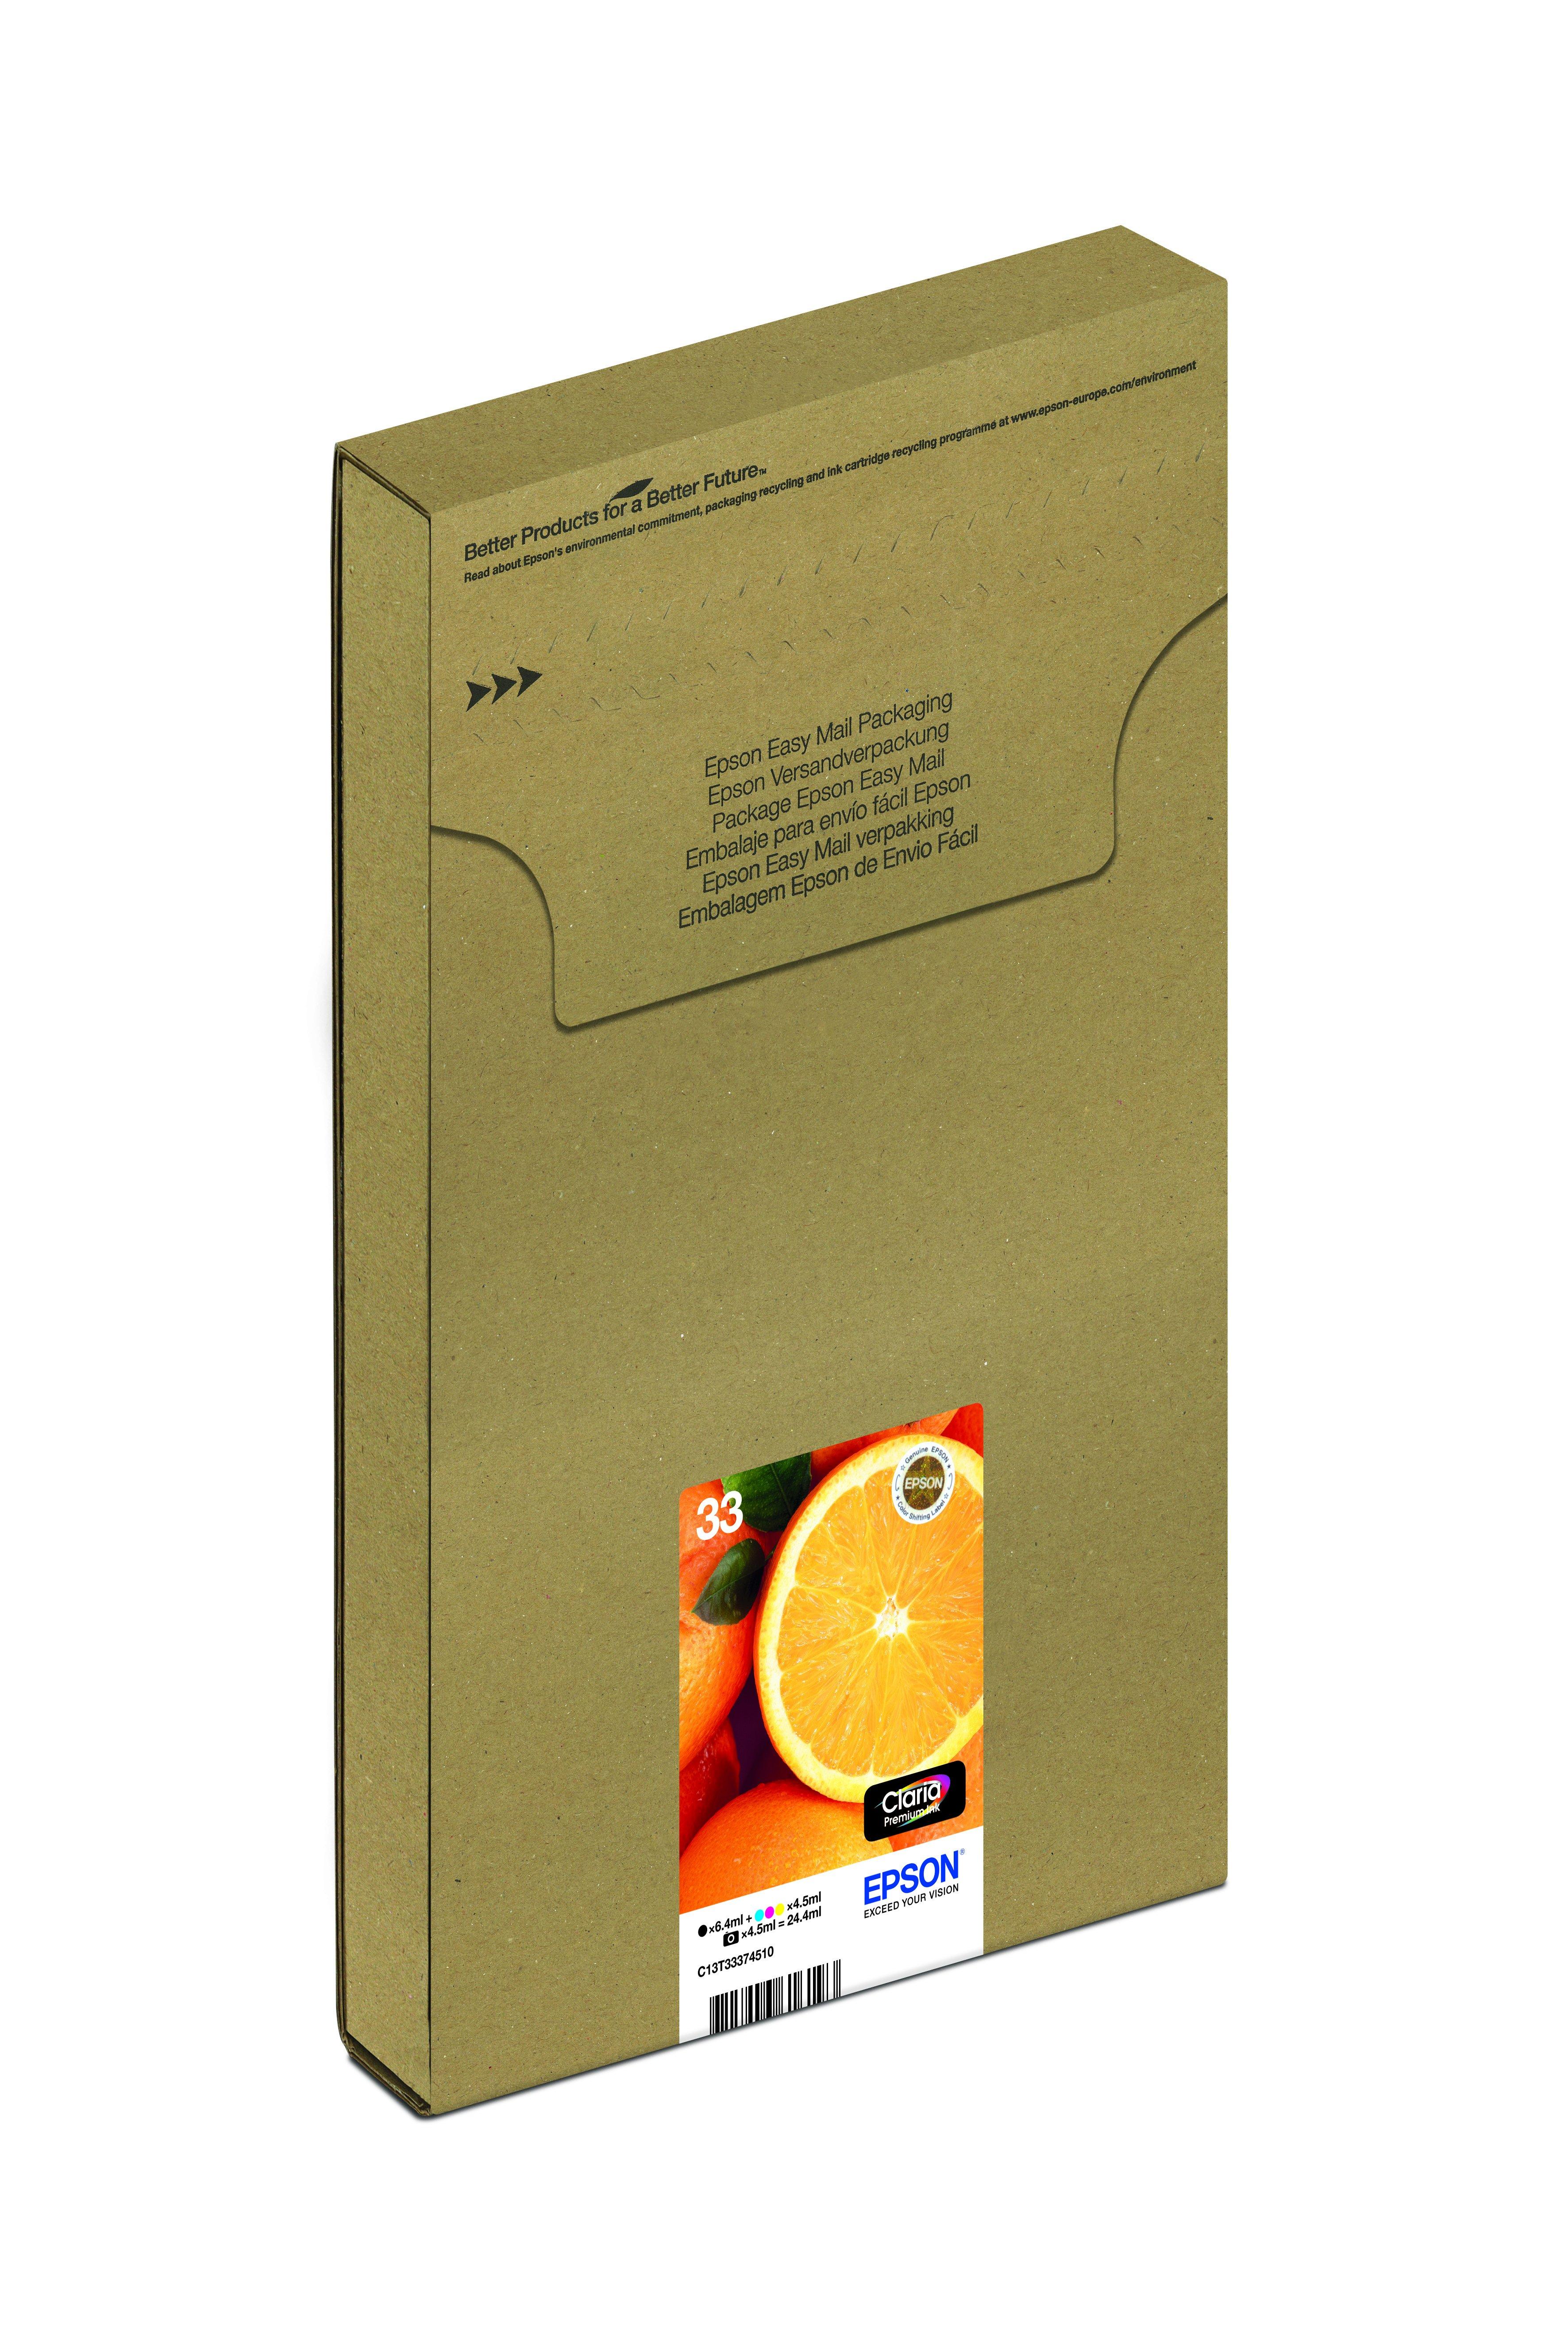 Encre EasyMail Claria Premium multipack 5 couleurs Oranges 33, Consommables encre, Encre & papier, Produits